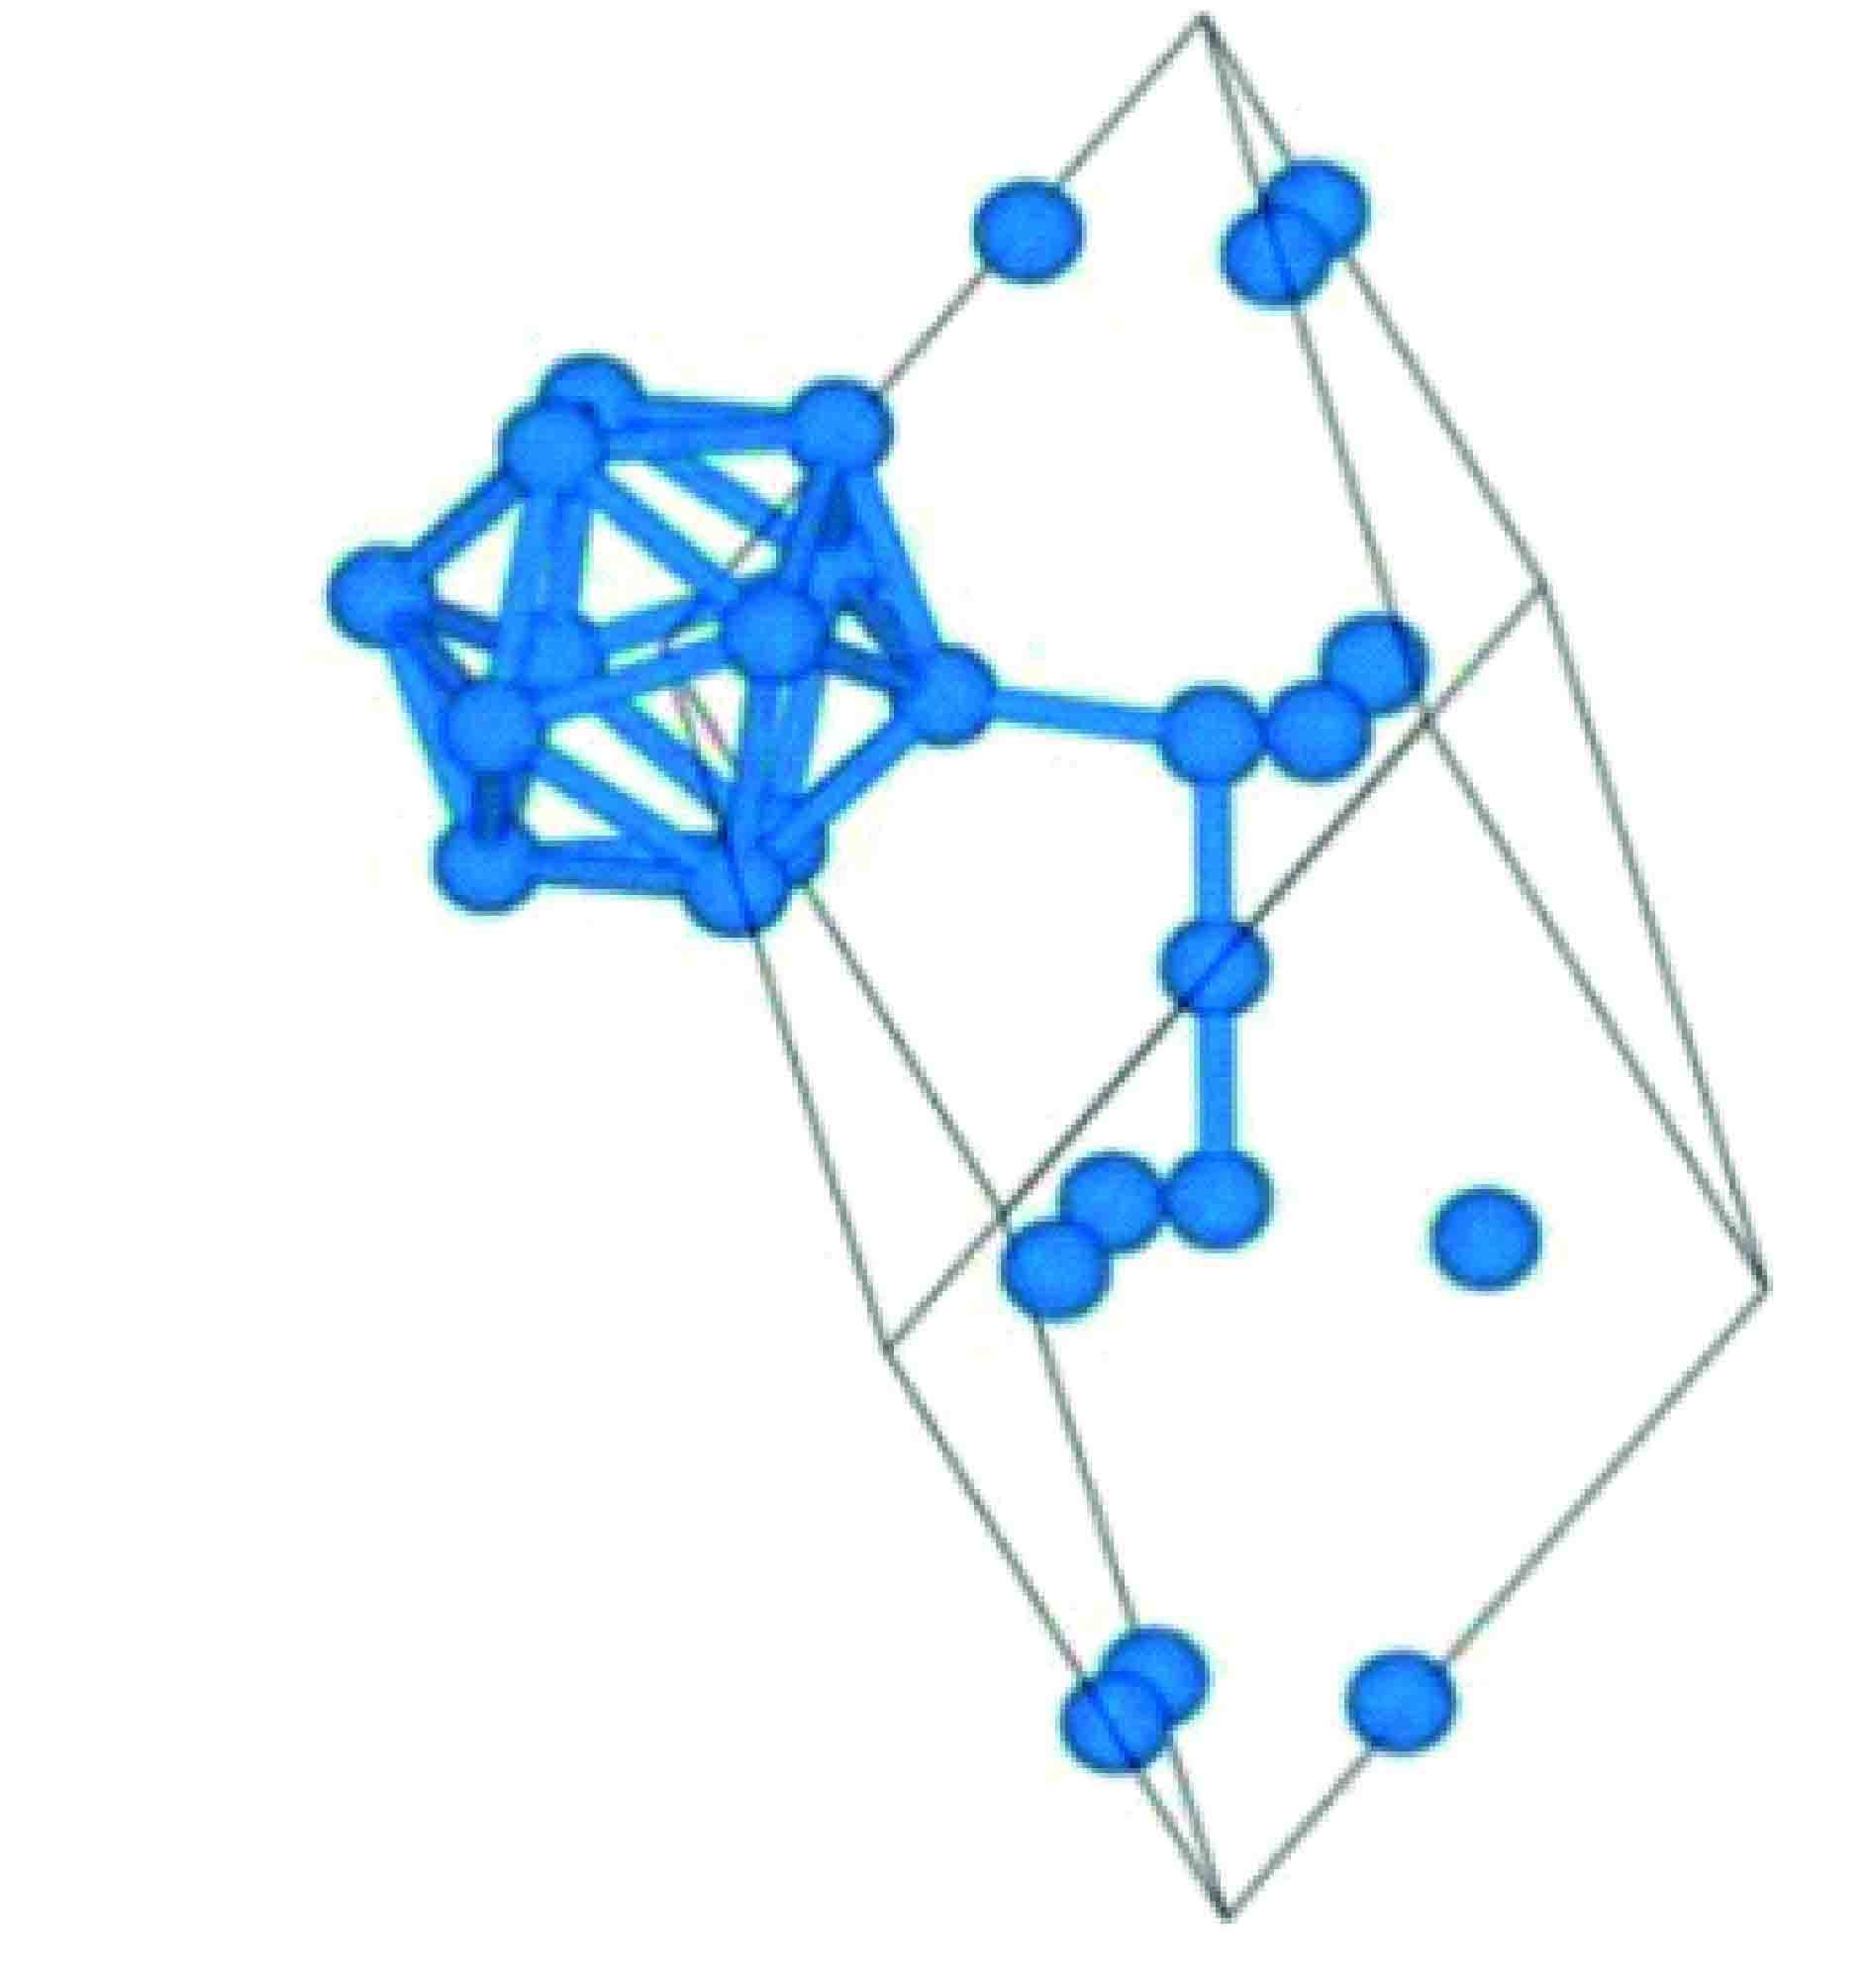 硼的原子结构示意图图片